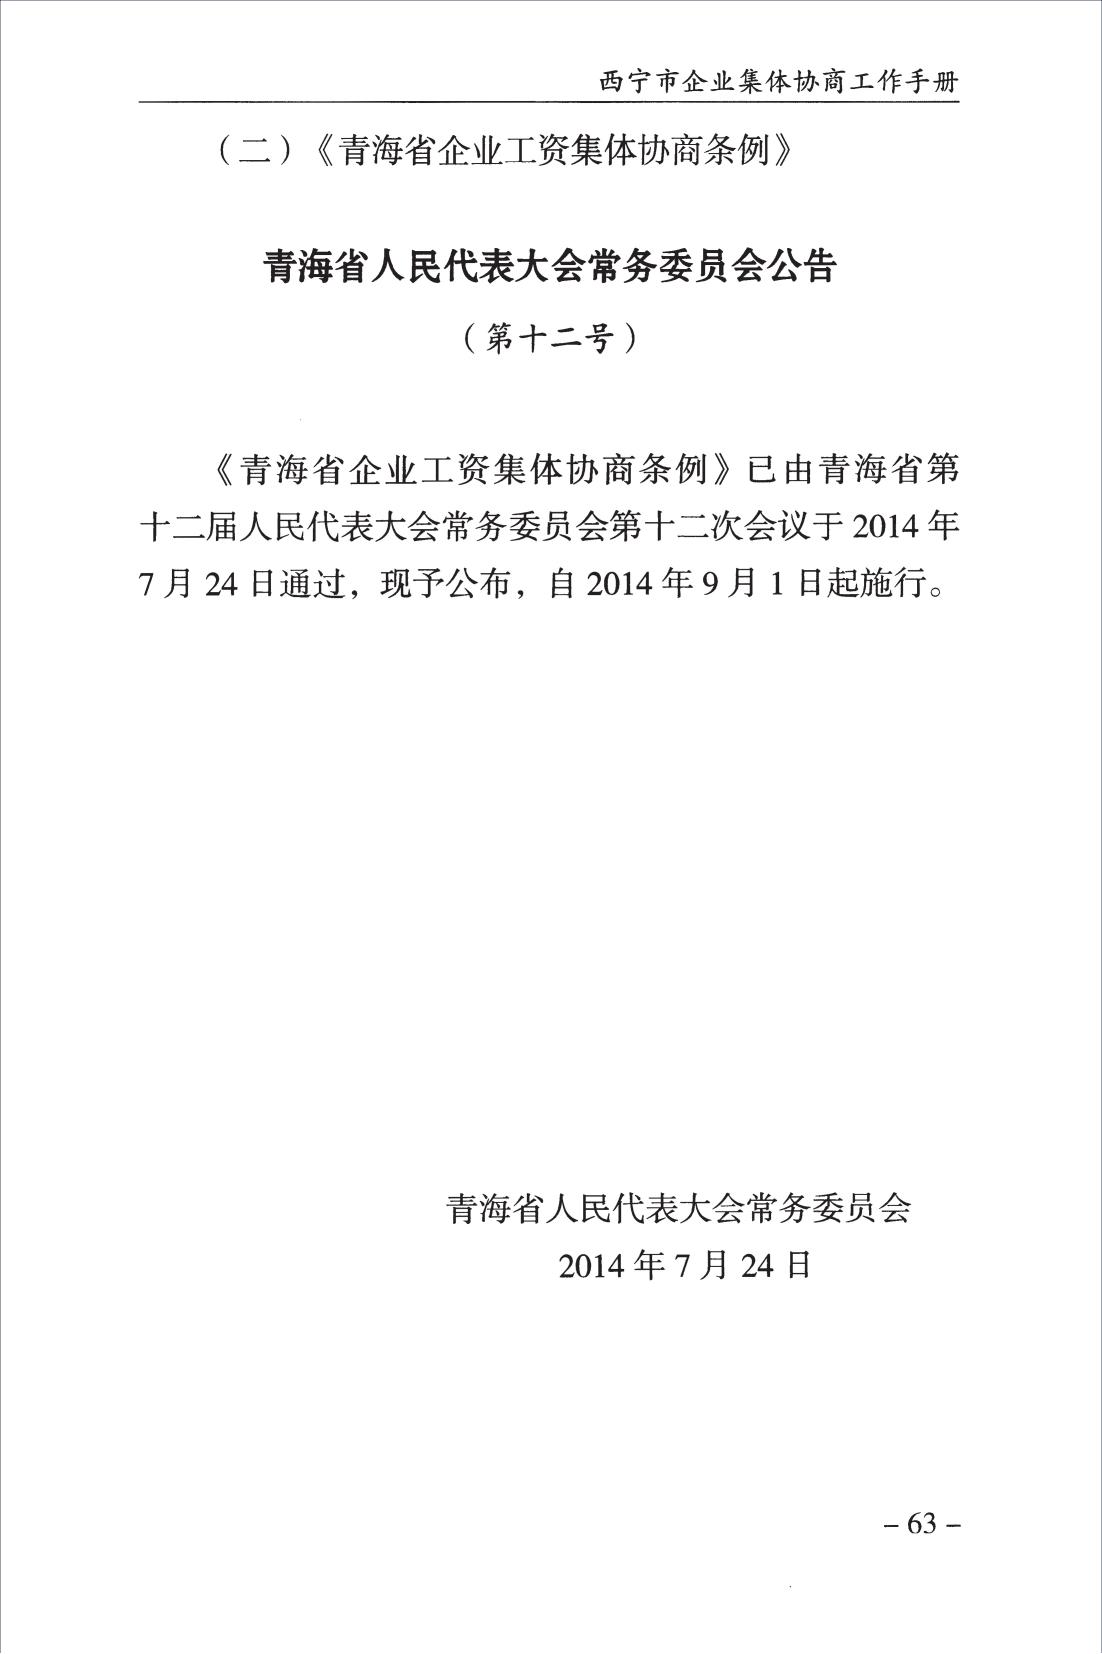 西宁市企业集体协商工作手册_65.jpg